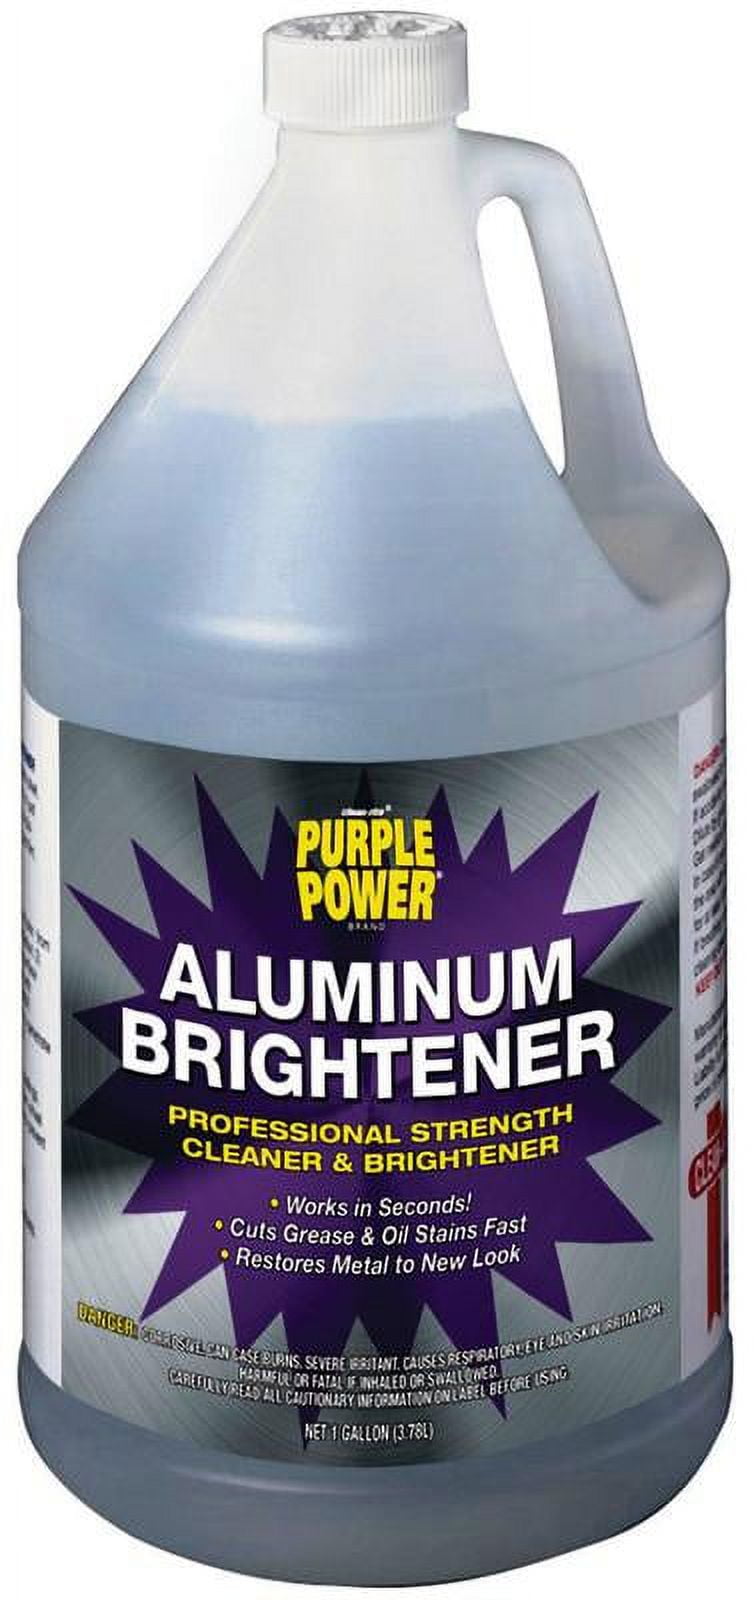 1st Ayd Corporation. Aluma Brite Plus Aluminum Brightener 5 gallon pail